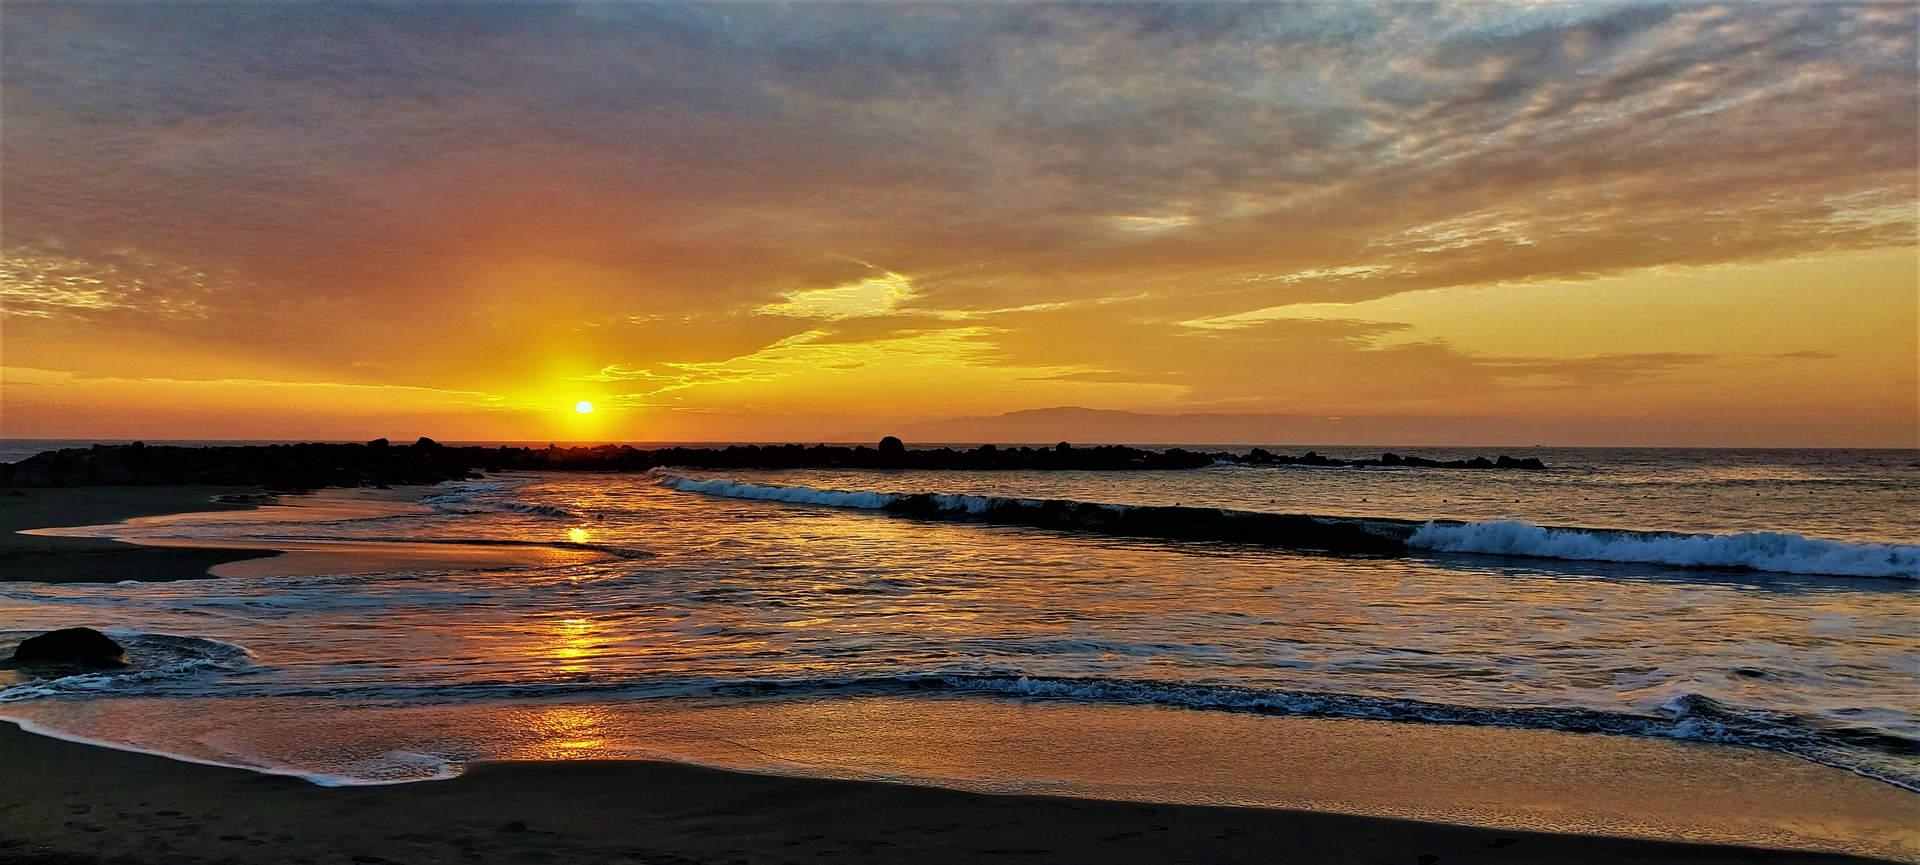 Playa Troya - pláž Costa Adeje (9)